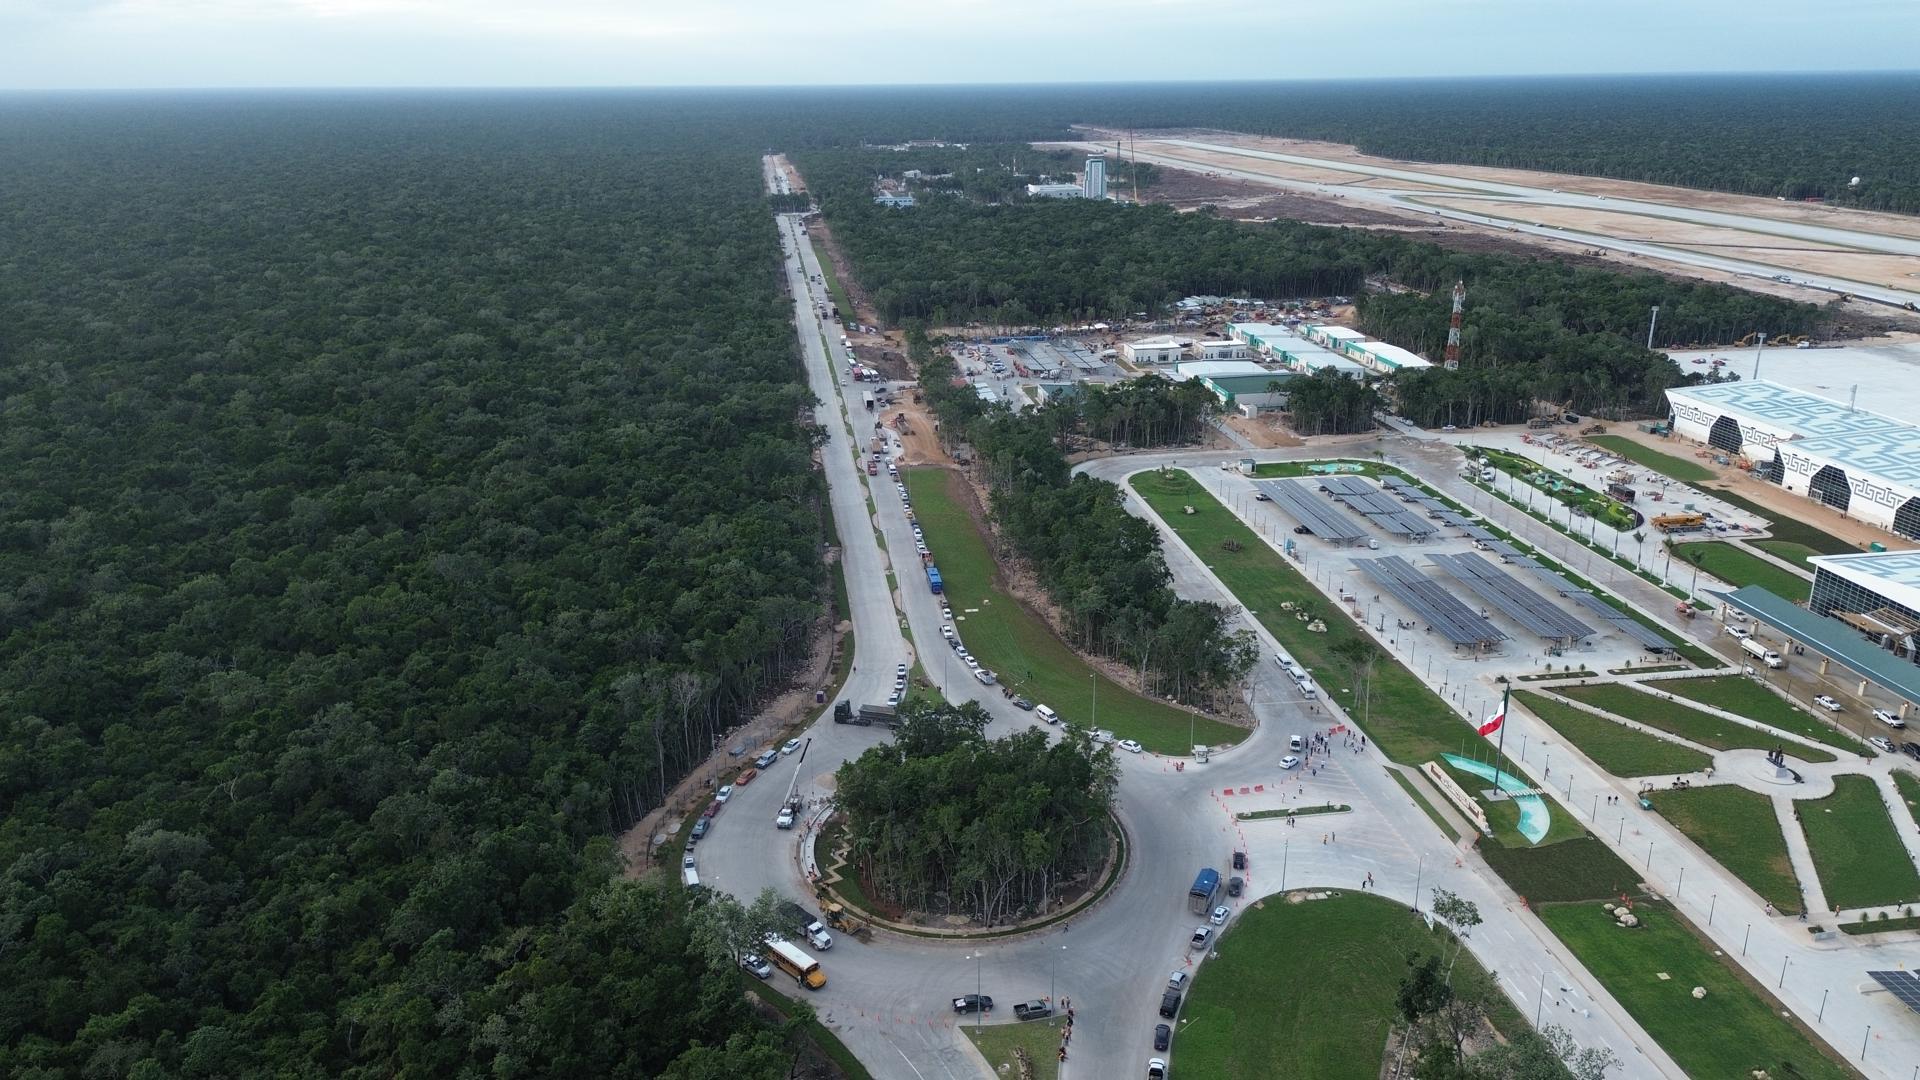 El nuevo Aeropuerto de Tulum se prepara a marchas forzadas para abrir